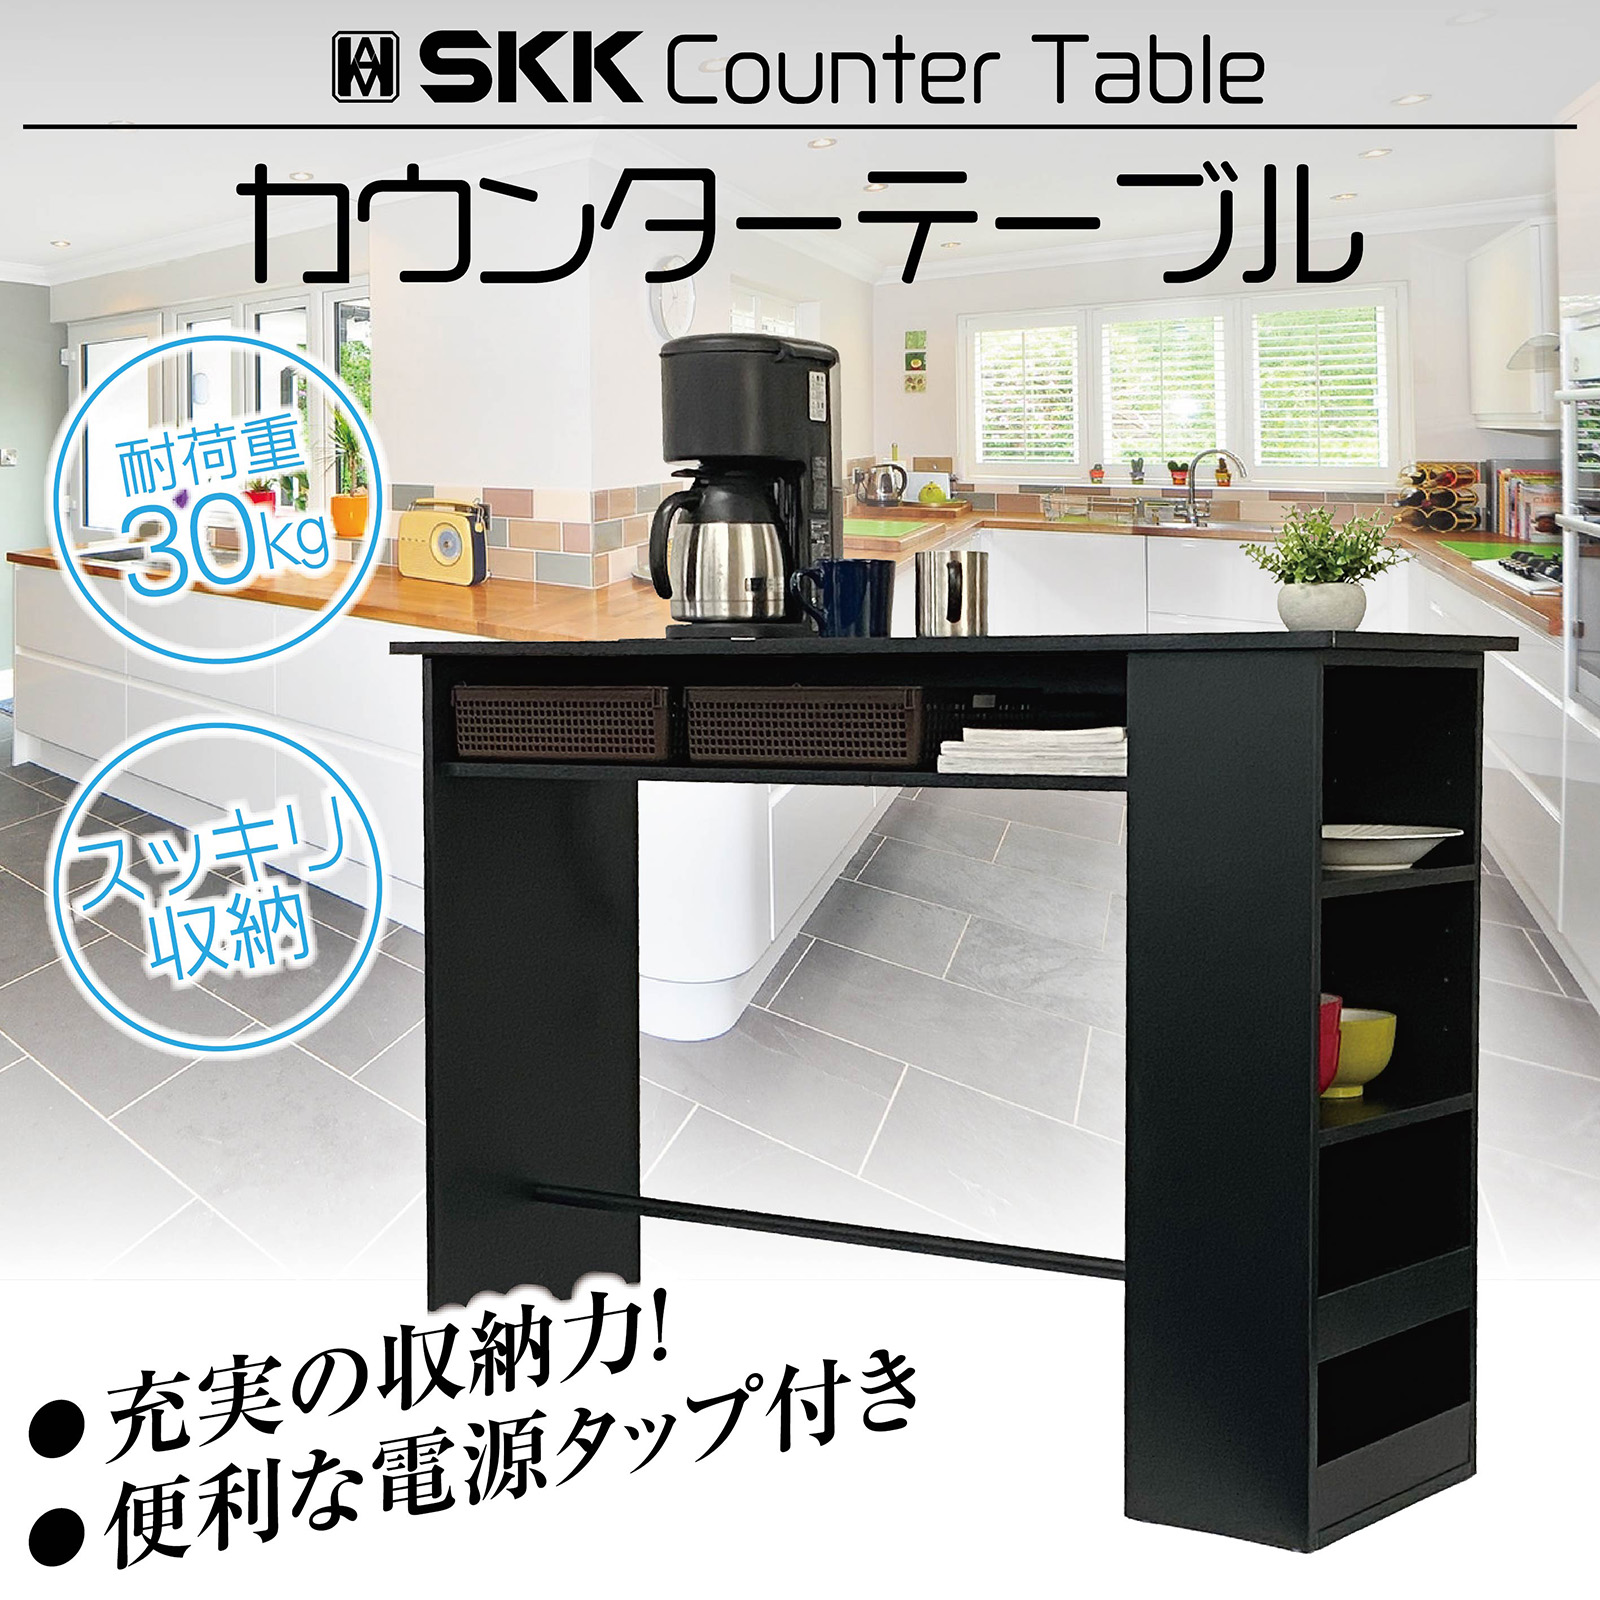 カウンターテーブル 収納 キッチンカウンターテーブル 対面 SKK